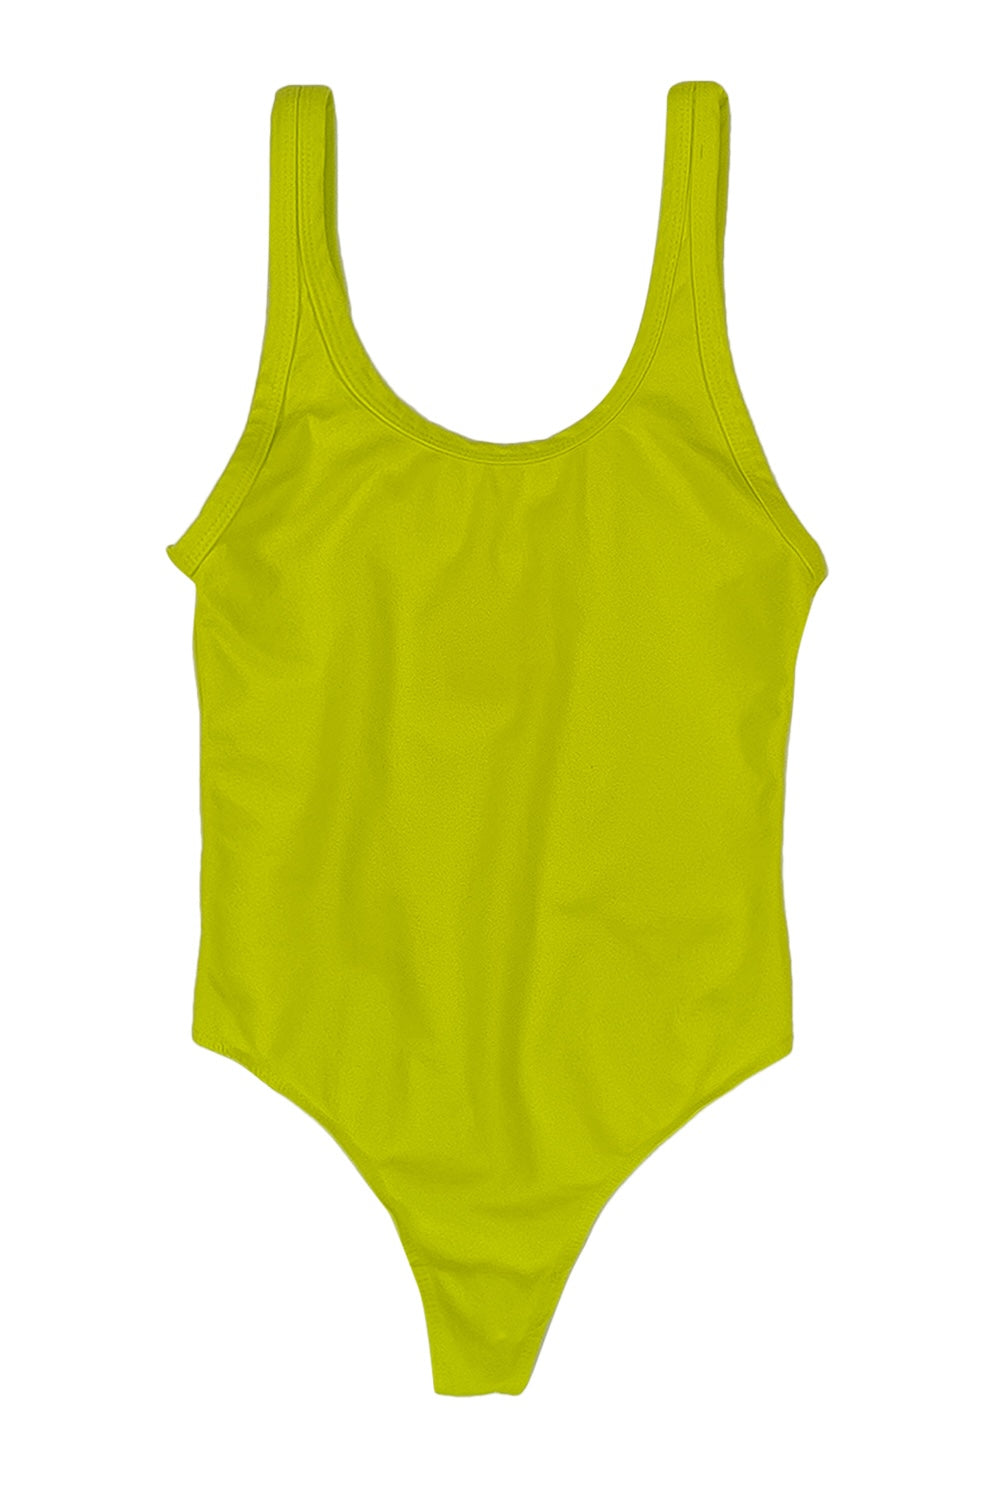 Bodysuit | Jungmaven Hemp Clothing & Accessories / Color:Limelight